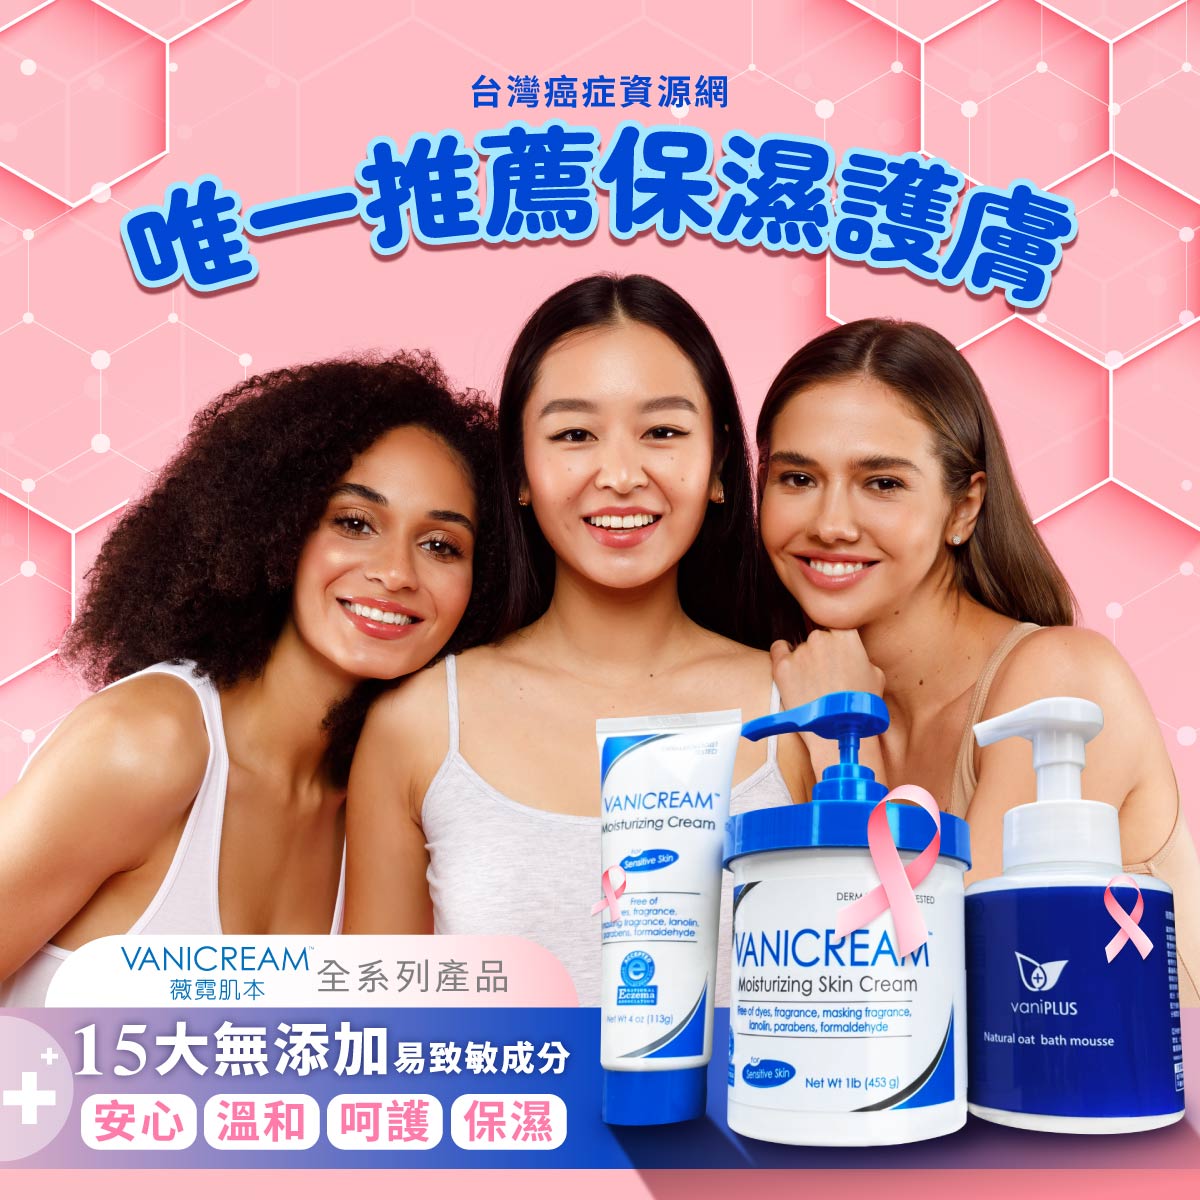 三個女生表示台灣癌症資源網唯一推薦保濕護膚品牌 薇霓肌本全日高效修護保濕乳霜15大無添加